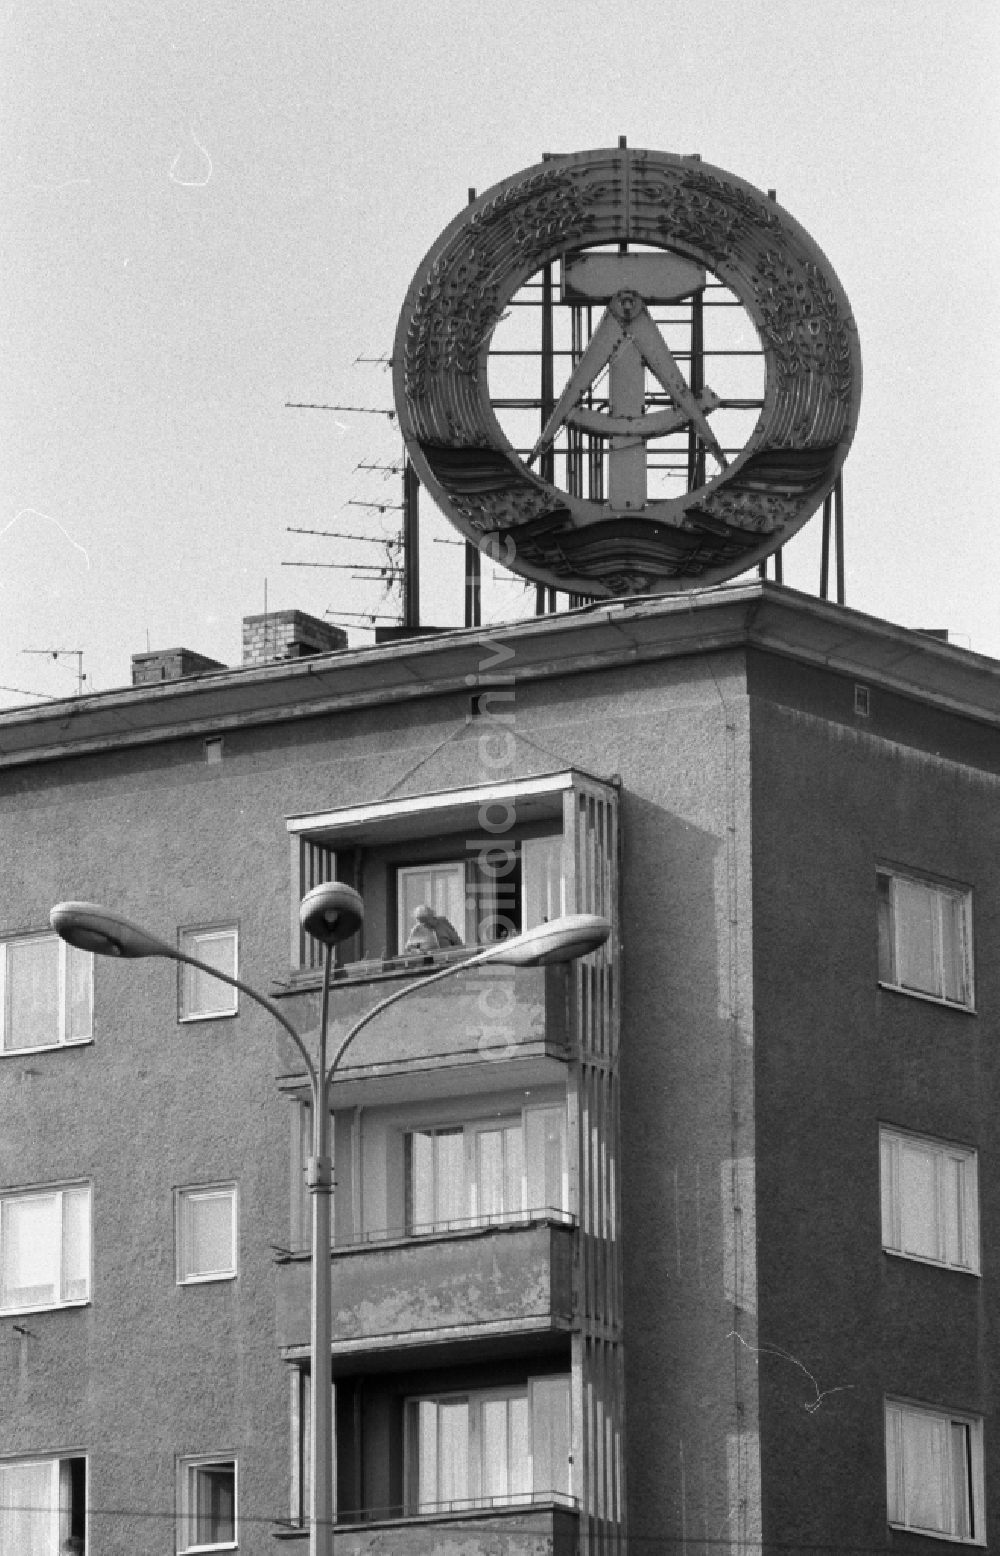 DDR-Fotoarchiv: Berlin - Symbol auf dem Dach eines Wohnhauses in Berlin in der DDR